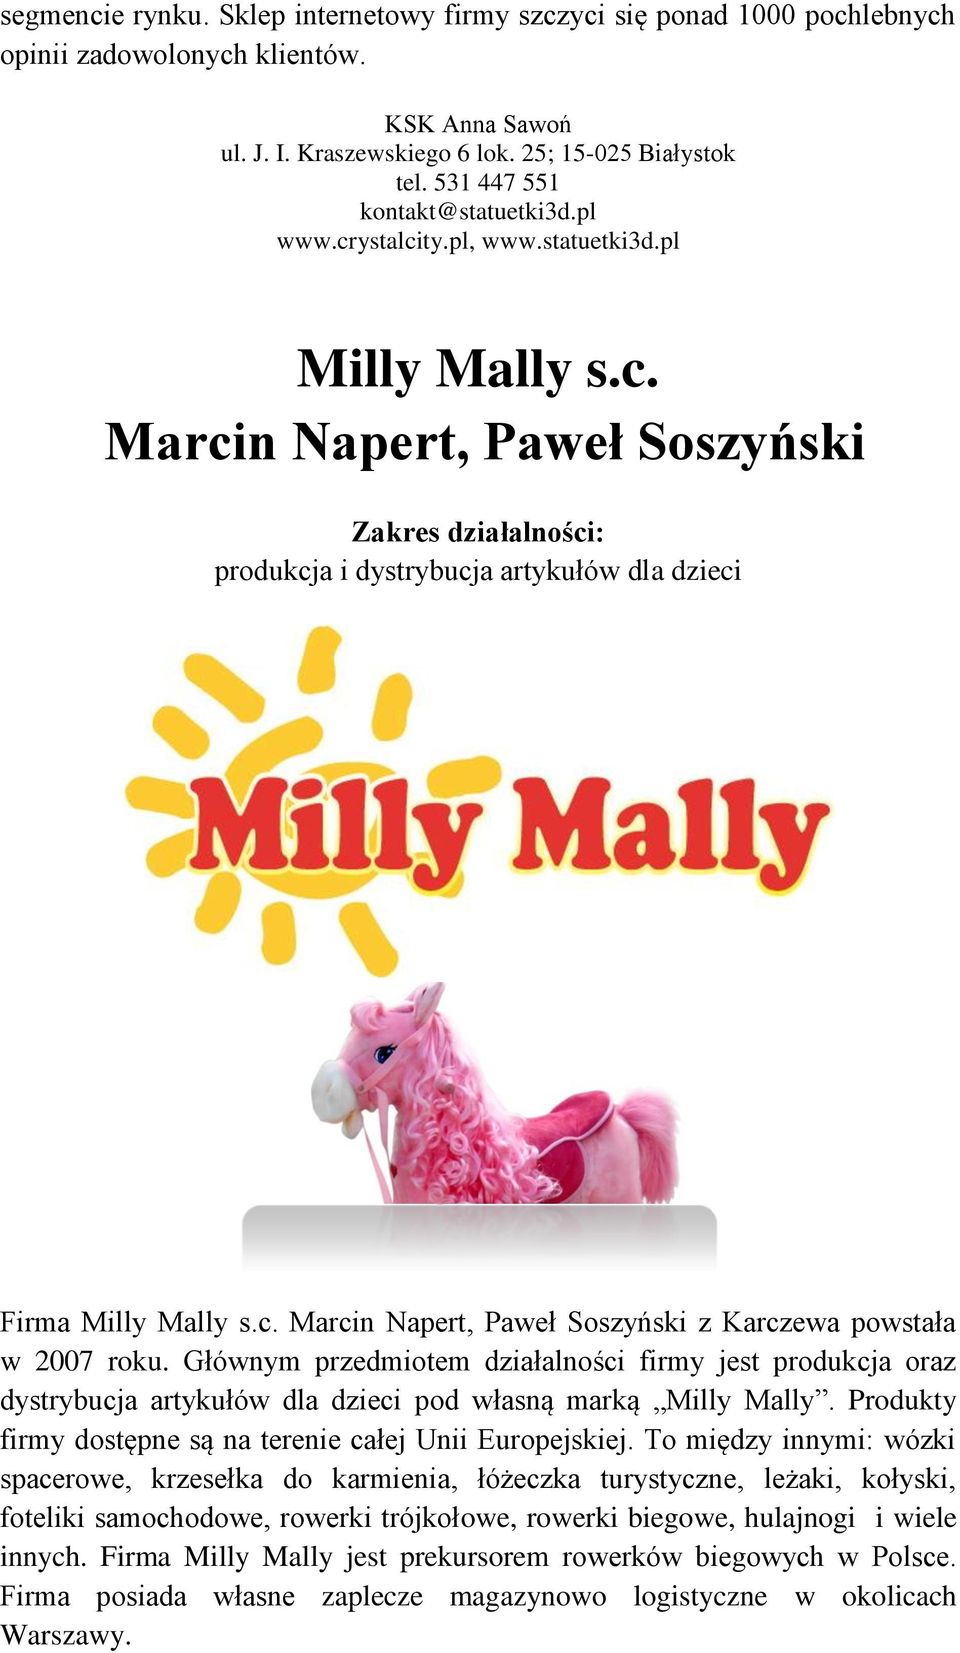 Głównym przedmiotem działalności firmy jest produkcja oraz dystrybucja artykułów dla dzieci pod własną marką Milly Mally. Produkty firmy dostępne są na terenie całej Unii Europejskiej.